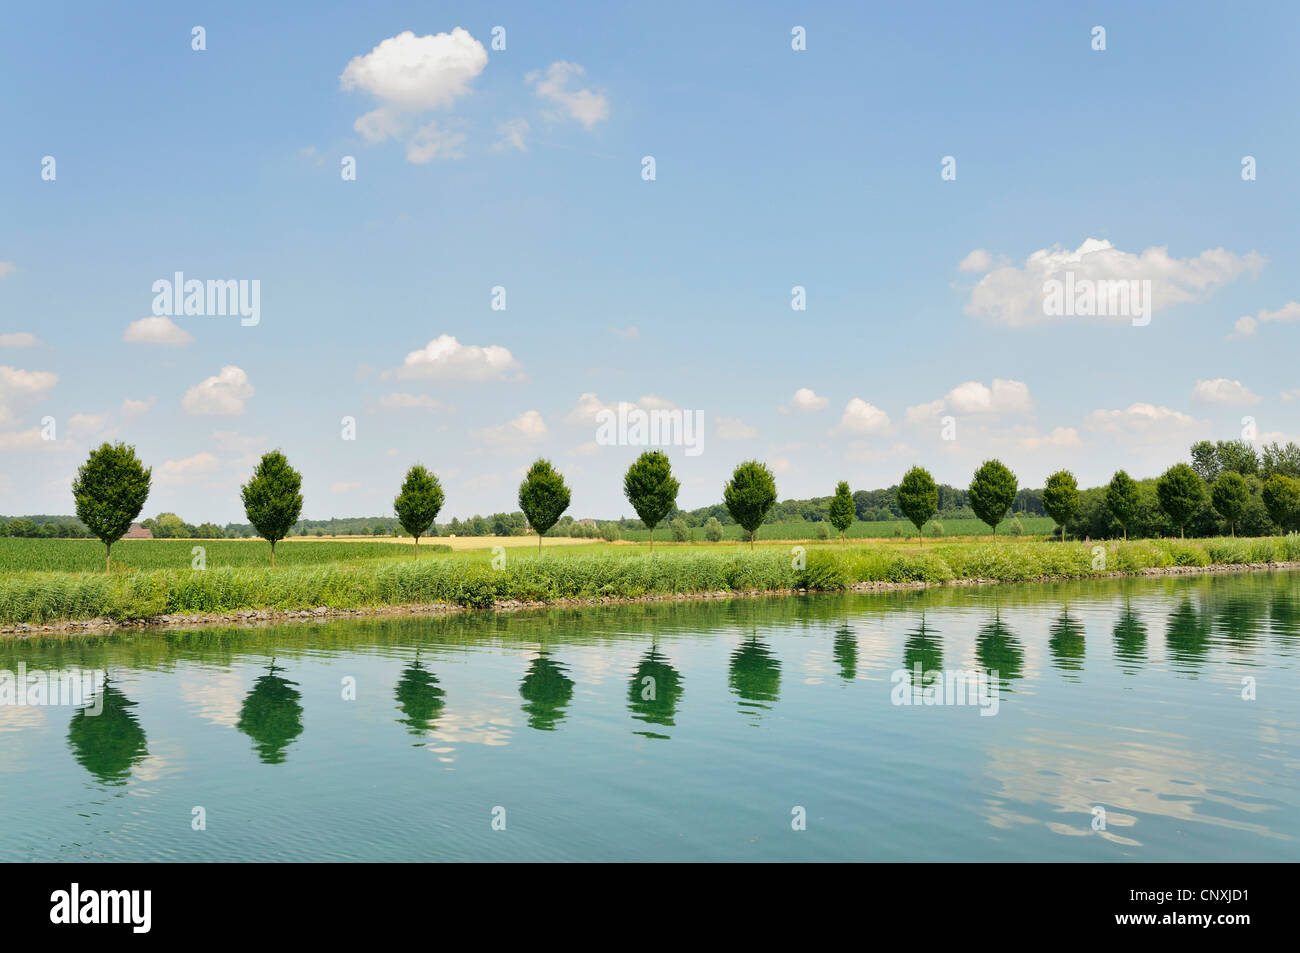 Hilera de árboles reflejando en el agua, Alemania Foto de stock